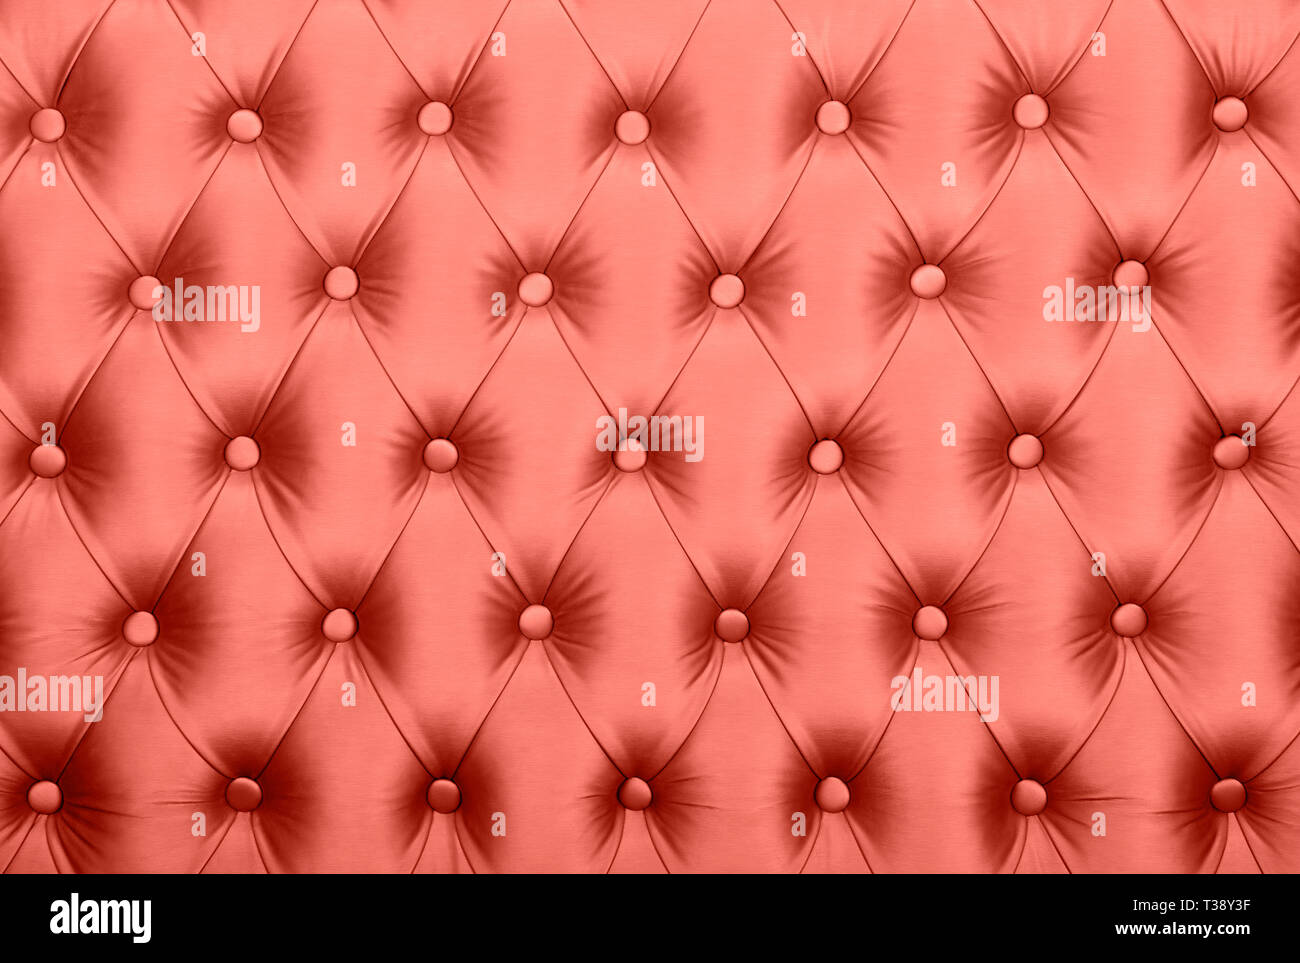 Coral Farben rosa Leder capitone Background, retro Chesterfield Stil kariert Soft getuftete Stoff Möbel Dekoration mit Knöpfen, Nähe u Stockfoto